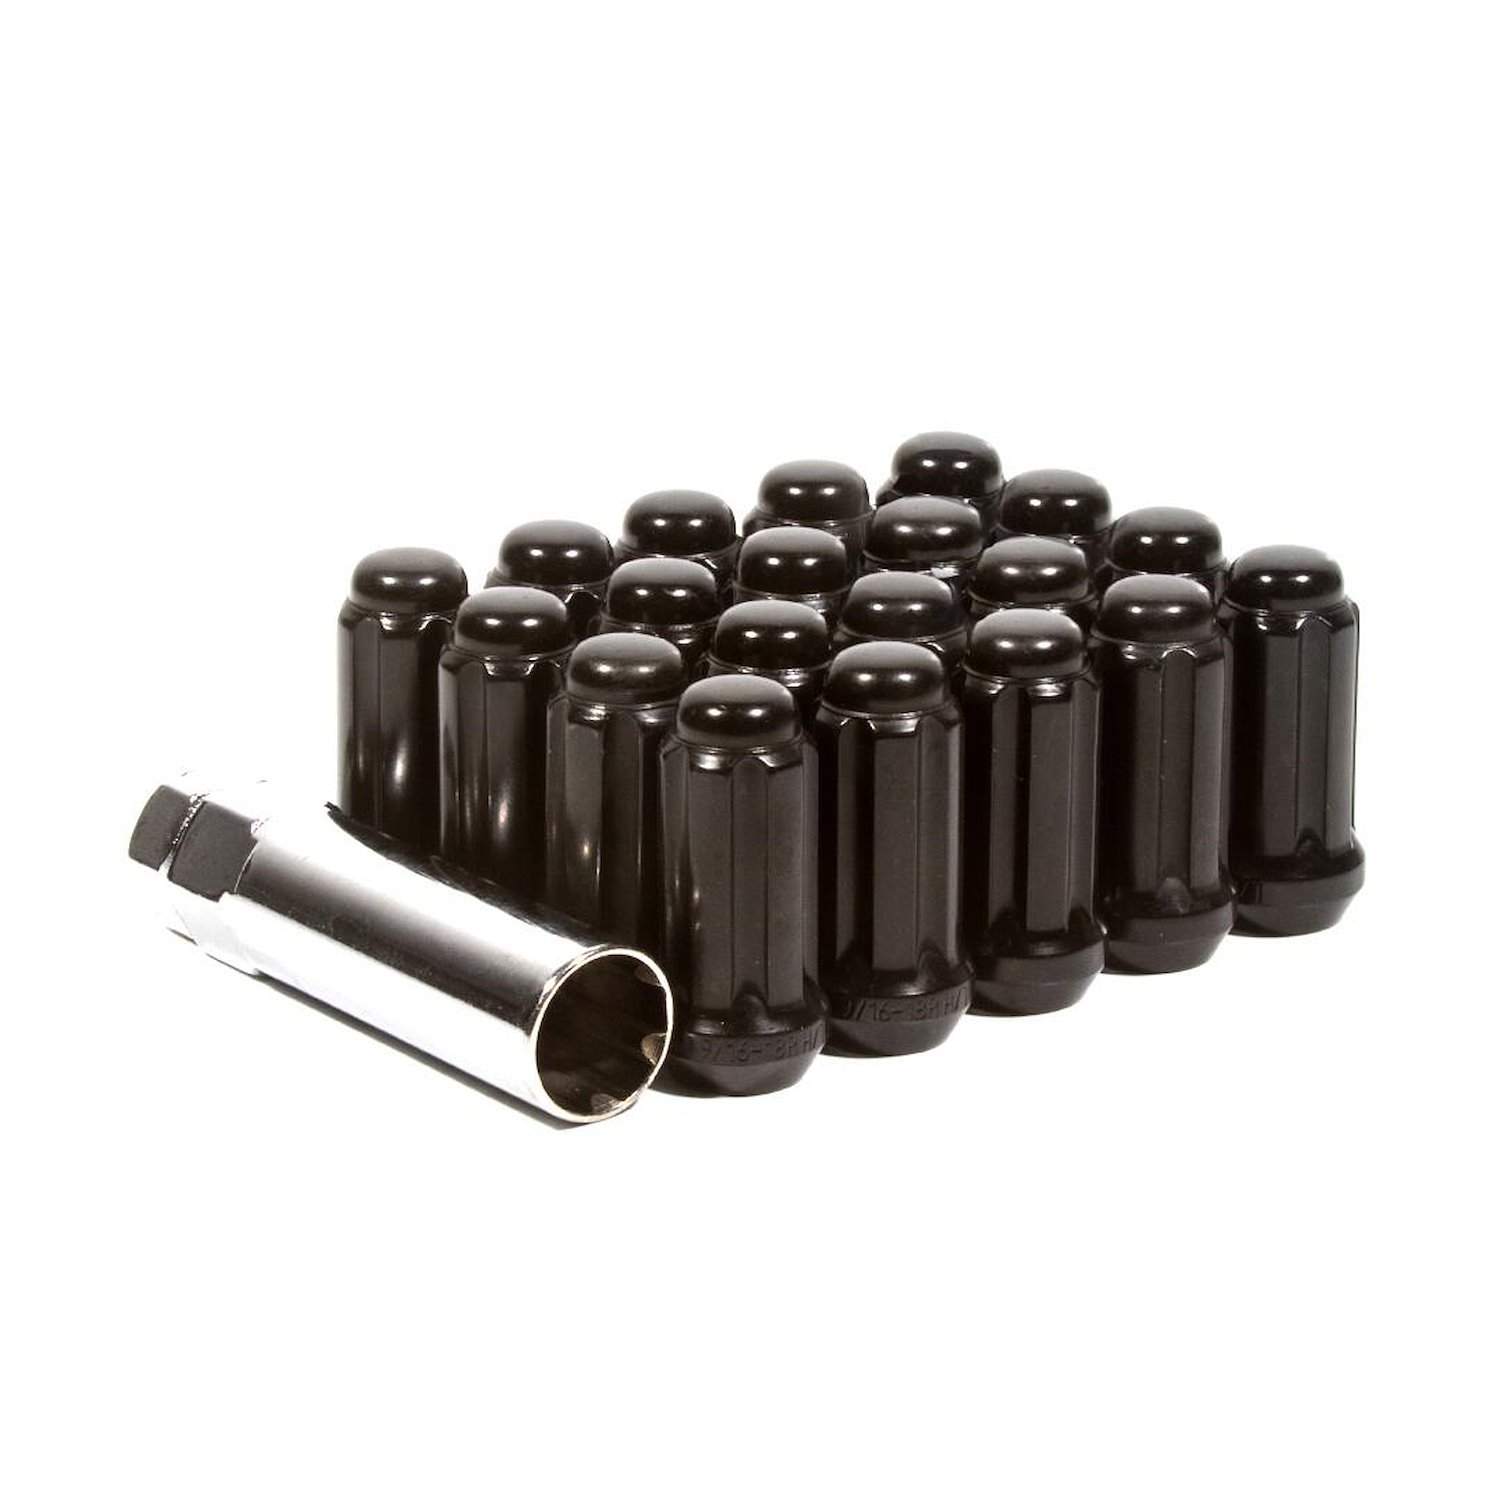 LK-W55012SB Lug Kit, Spline, 1/2-20, 5 Lug Kit, Black, 20 Nuts